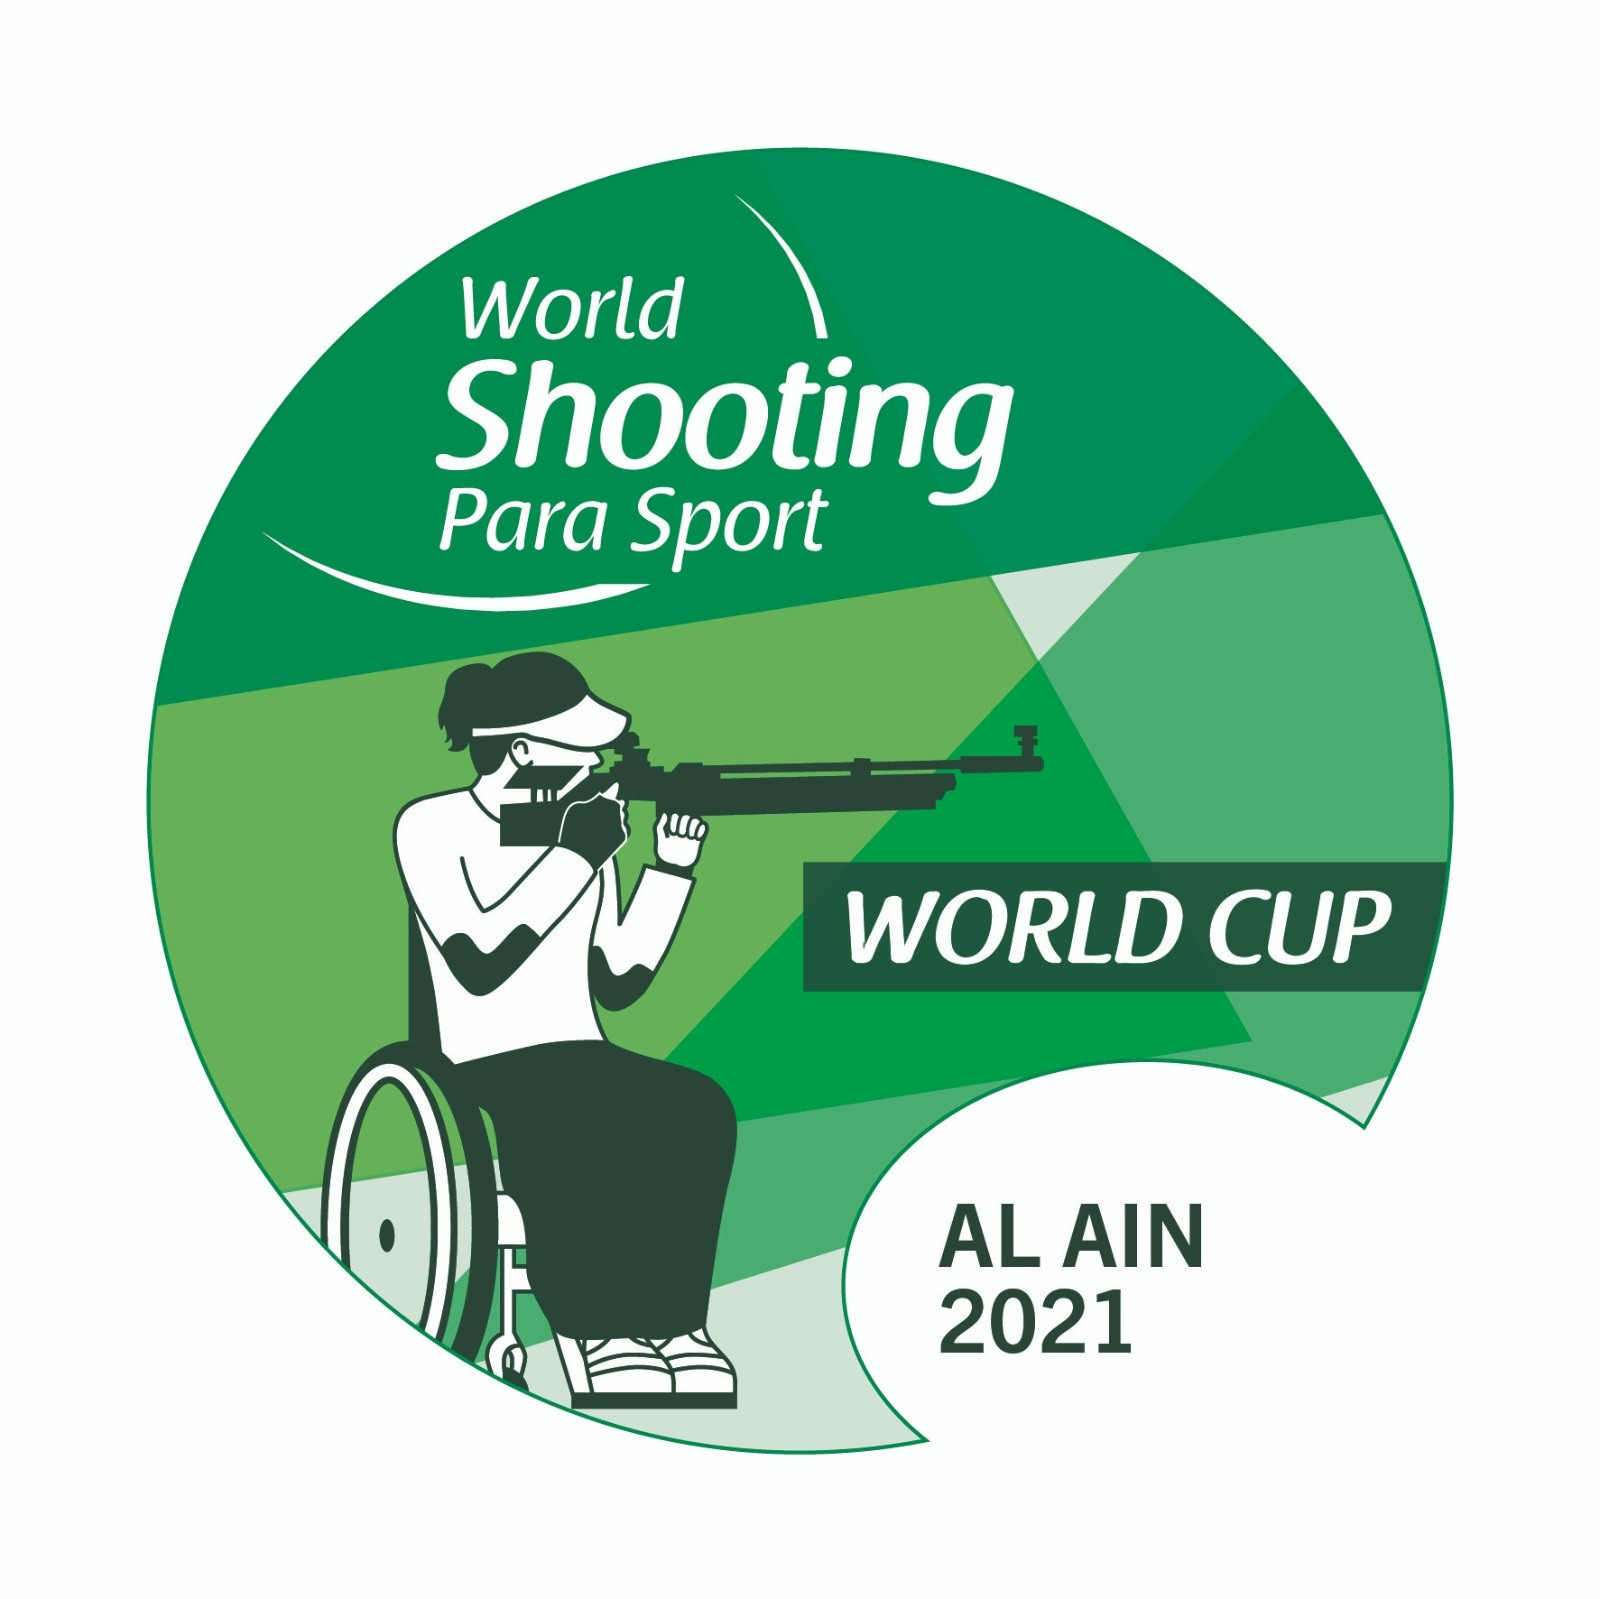 Narwal sets world record to win gold at World Shooting Para Sport World Cup